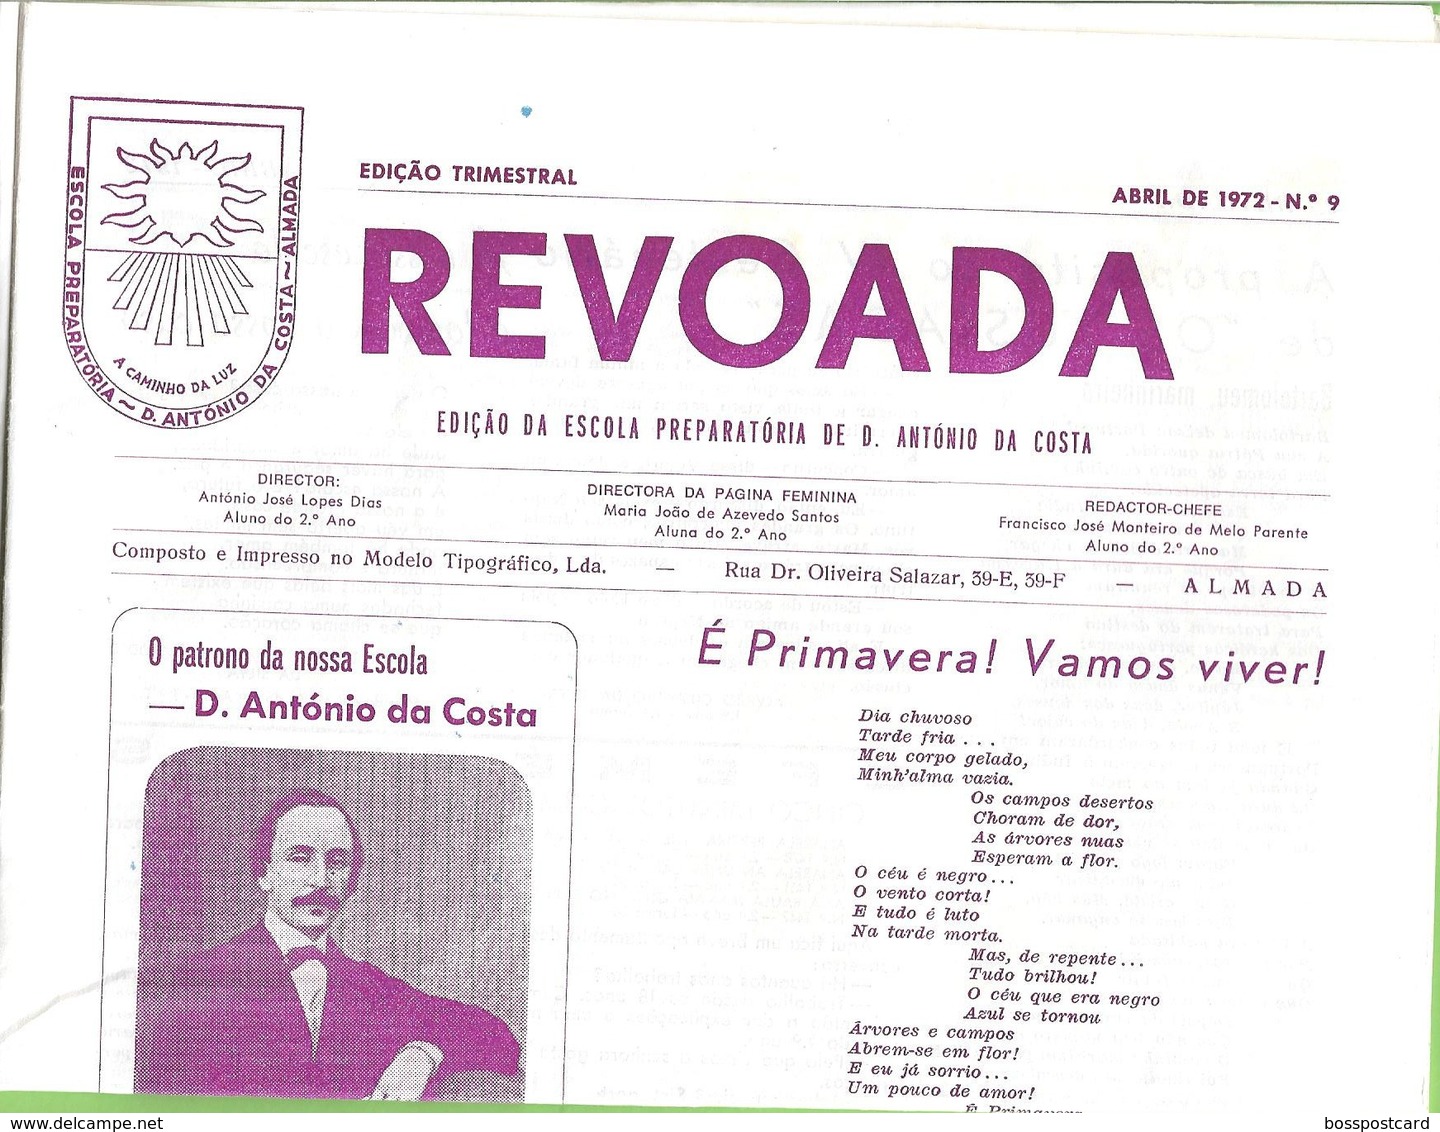 Almada - Jornal A Revoada Nº 9 de Abril de 1972 da Escola Preparatória de D. António da Costa